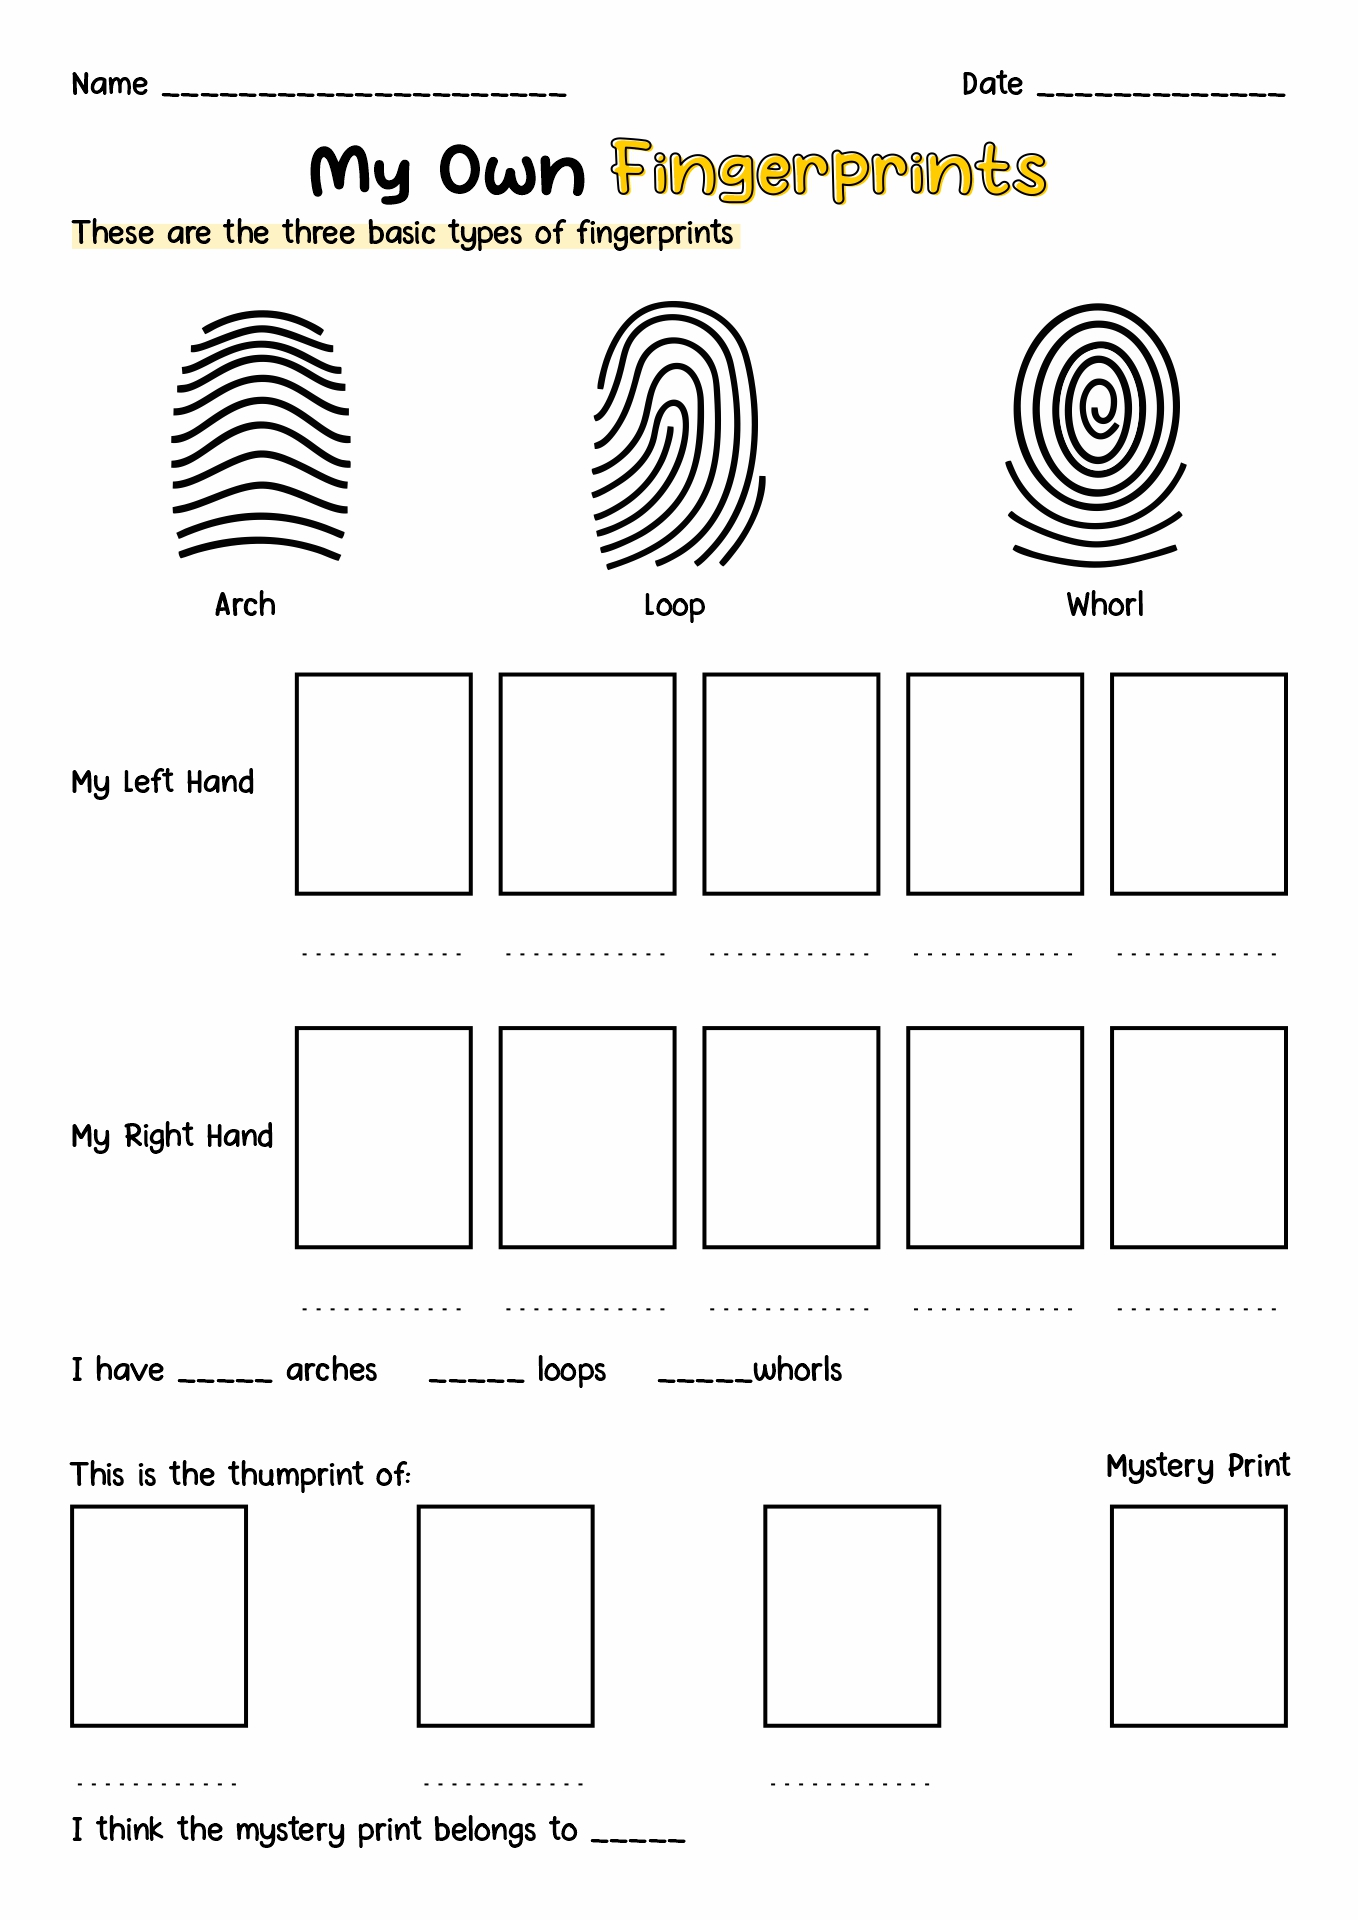 Fingerprint Activity Worksheet for Kids